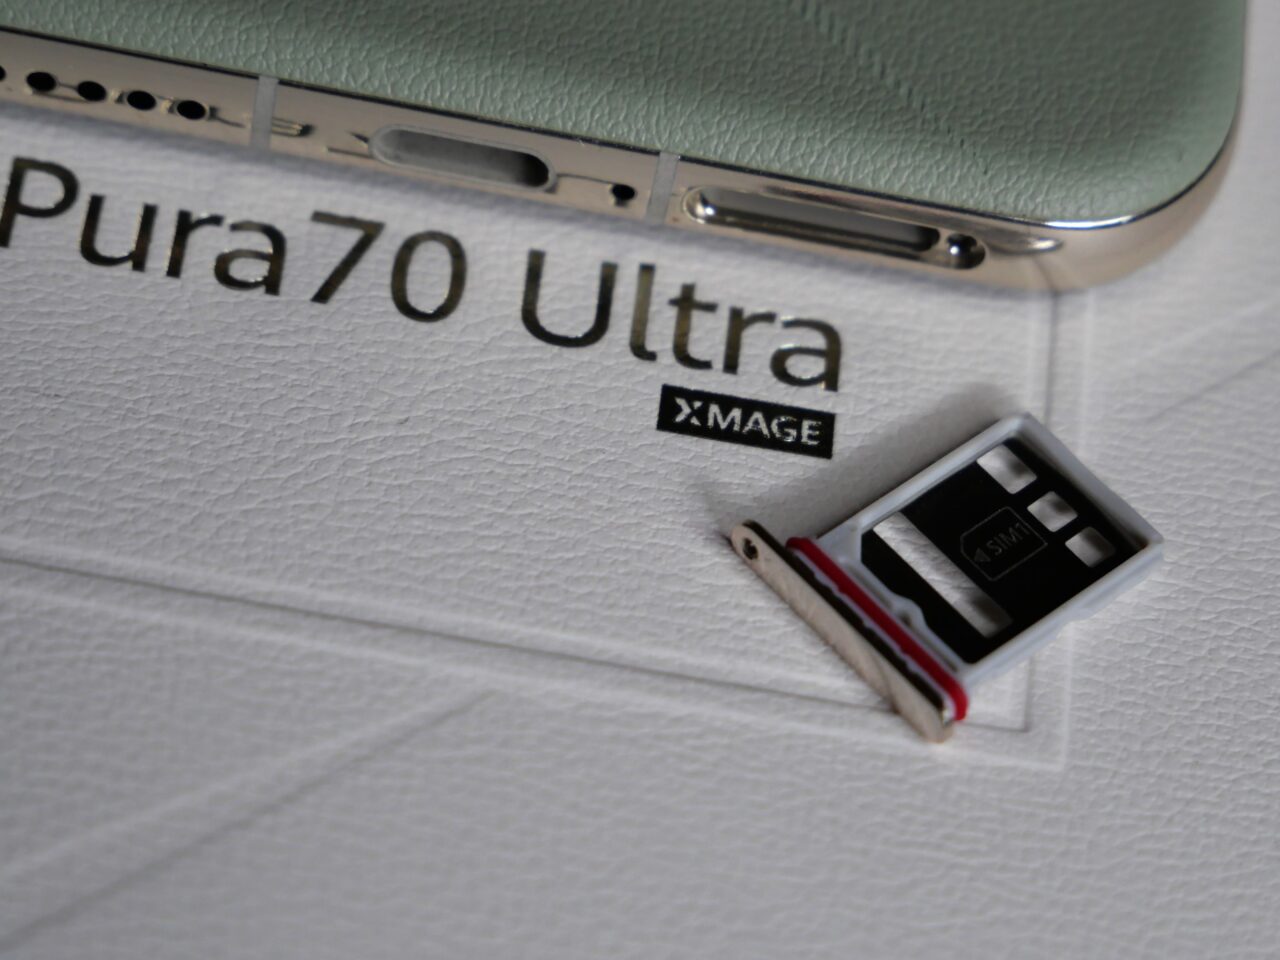 Górna część telefonu Pura70 Ultra na białym tle z wyciągniętym slotem na kartę SIM.